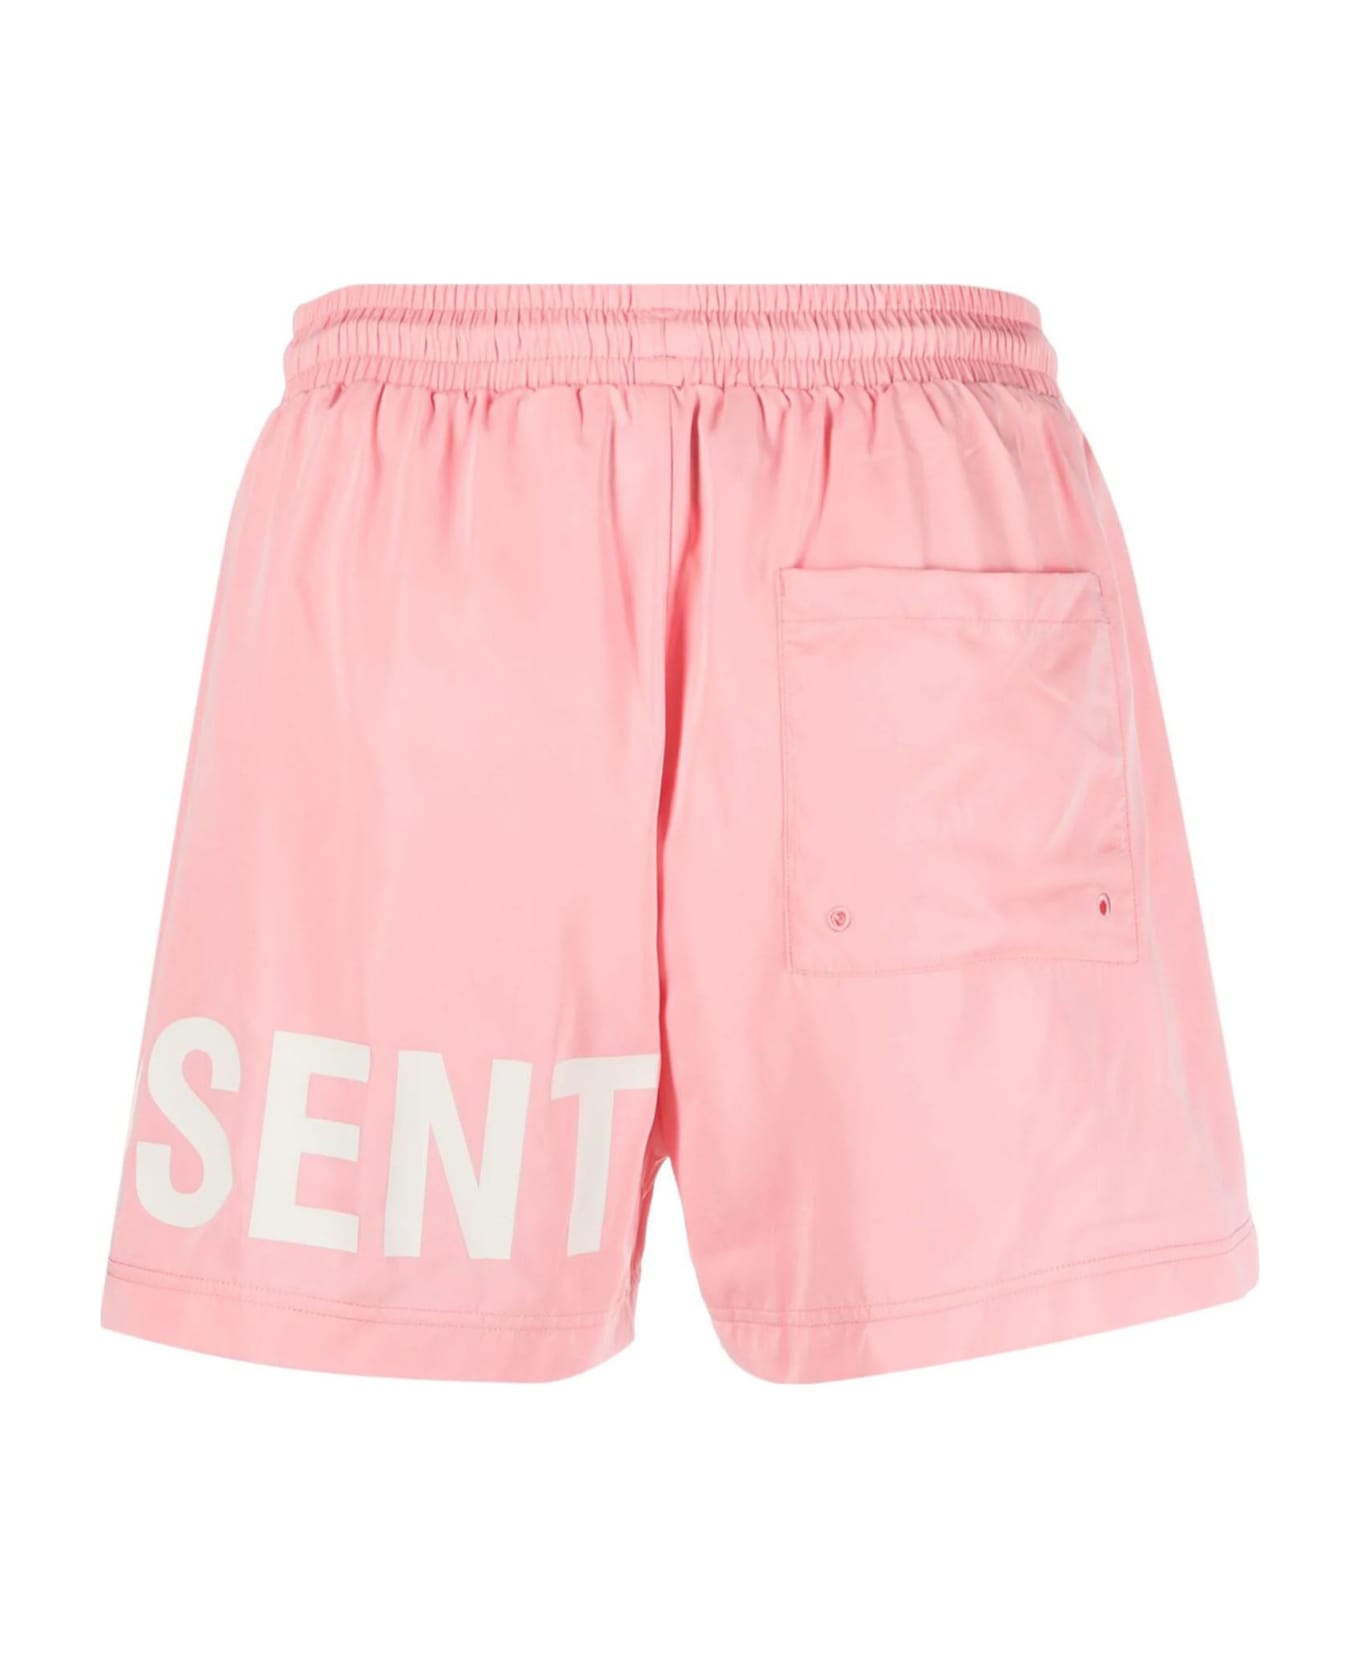 REPRESENT Sea Clothing Pink - Pink スイムトランクス